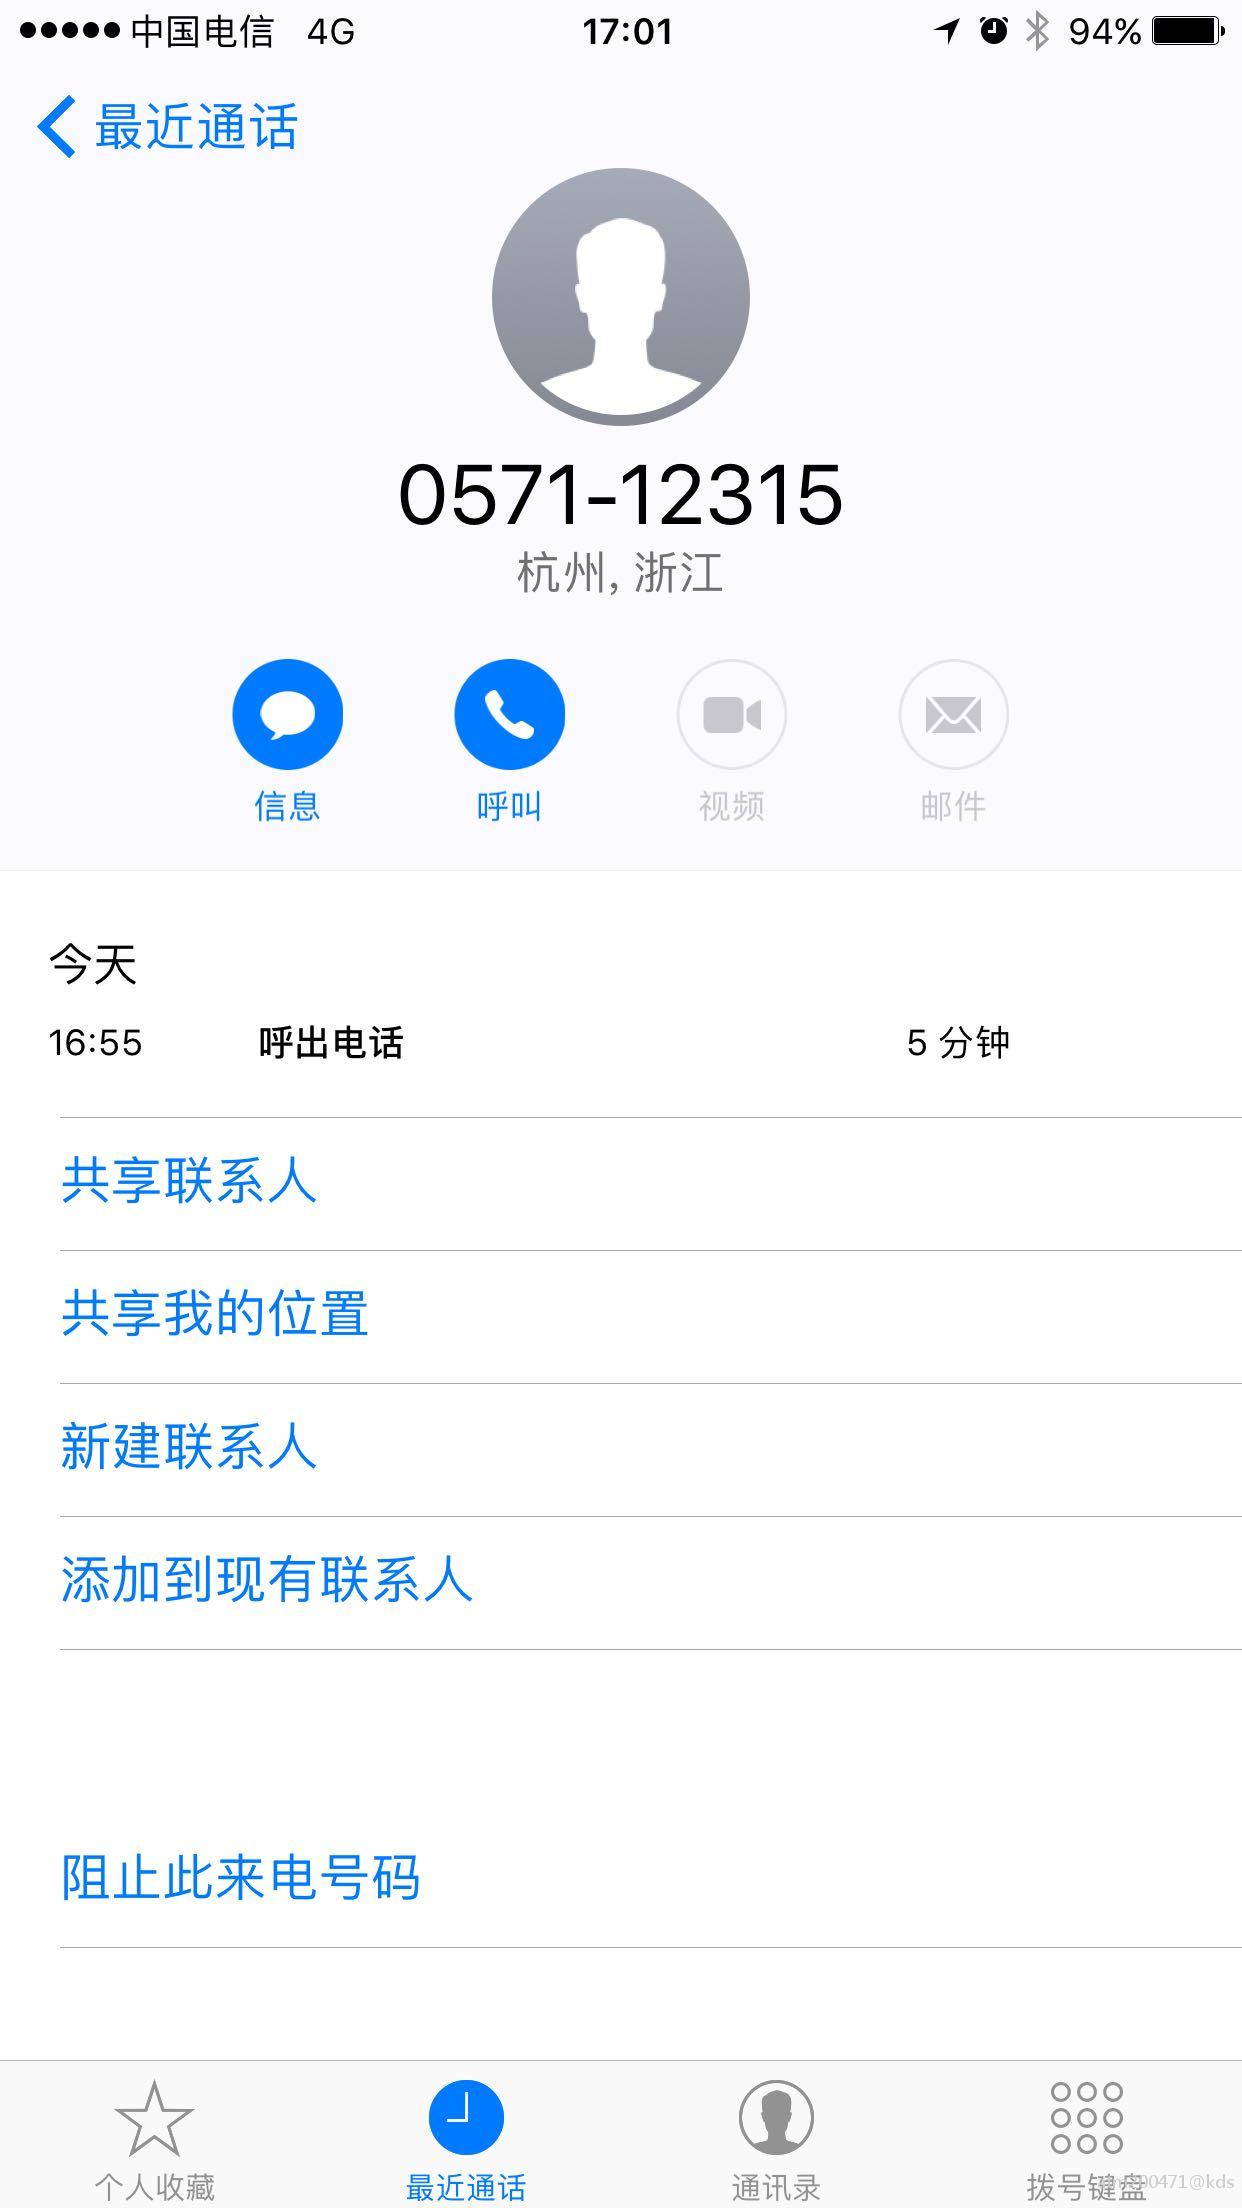 杭州工商局的热线电话已经投诉完毕,他们把我的号码记下来,然后向他们